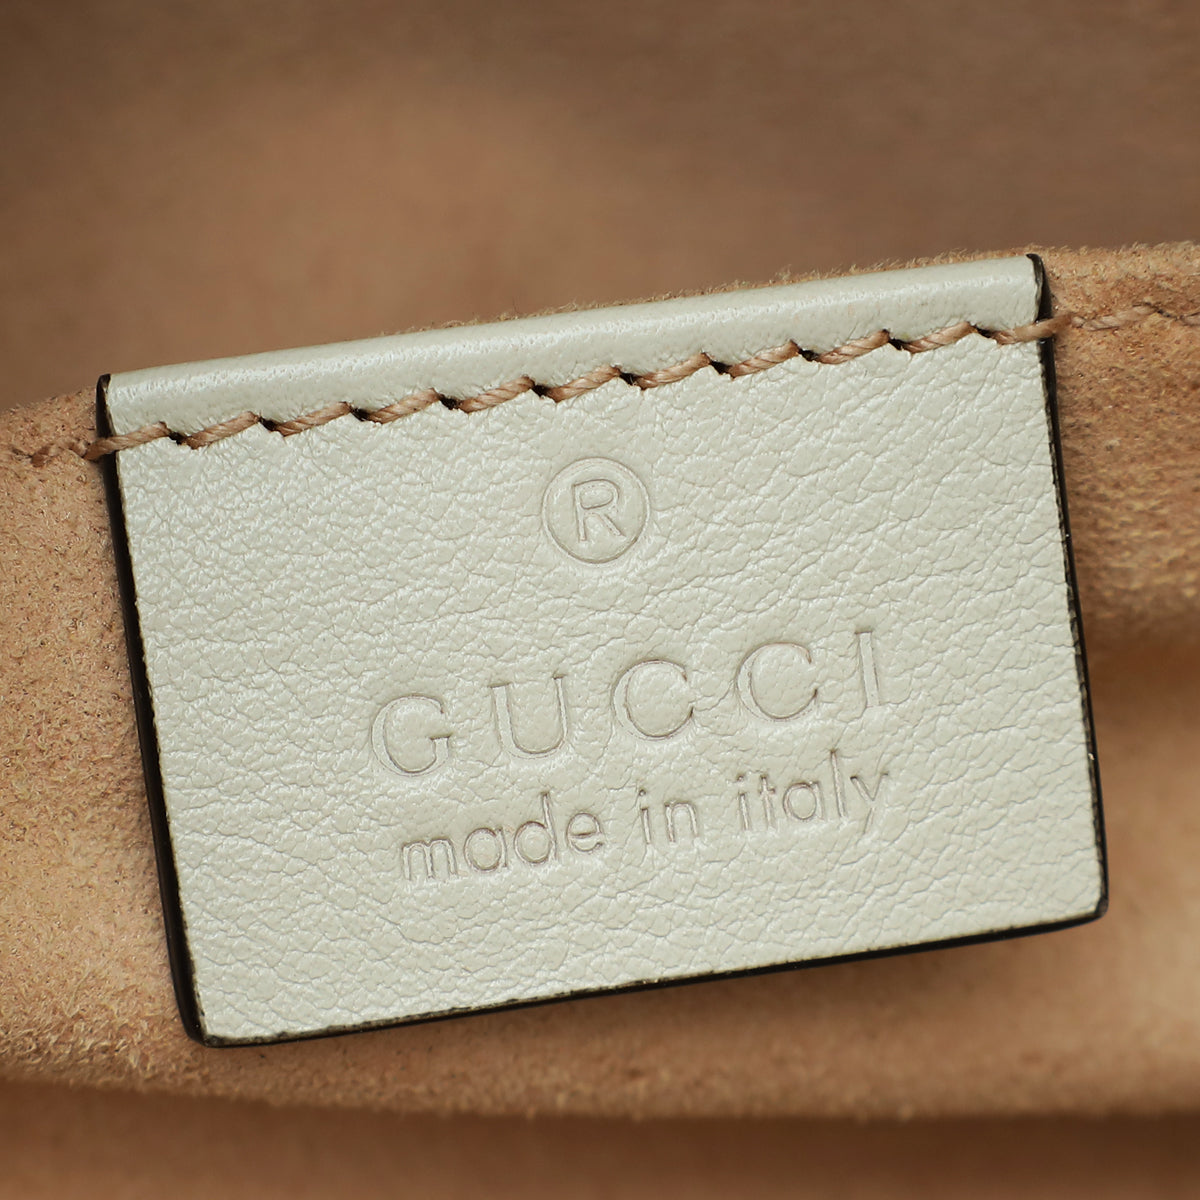 Gucci Off White Diana Tote Small Bag